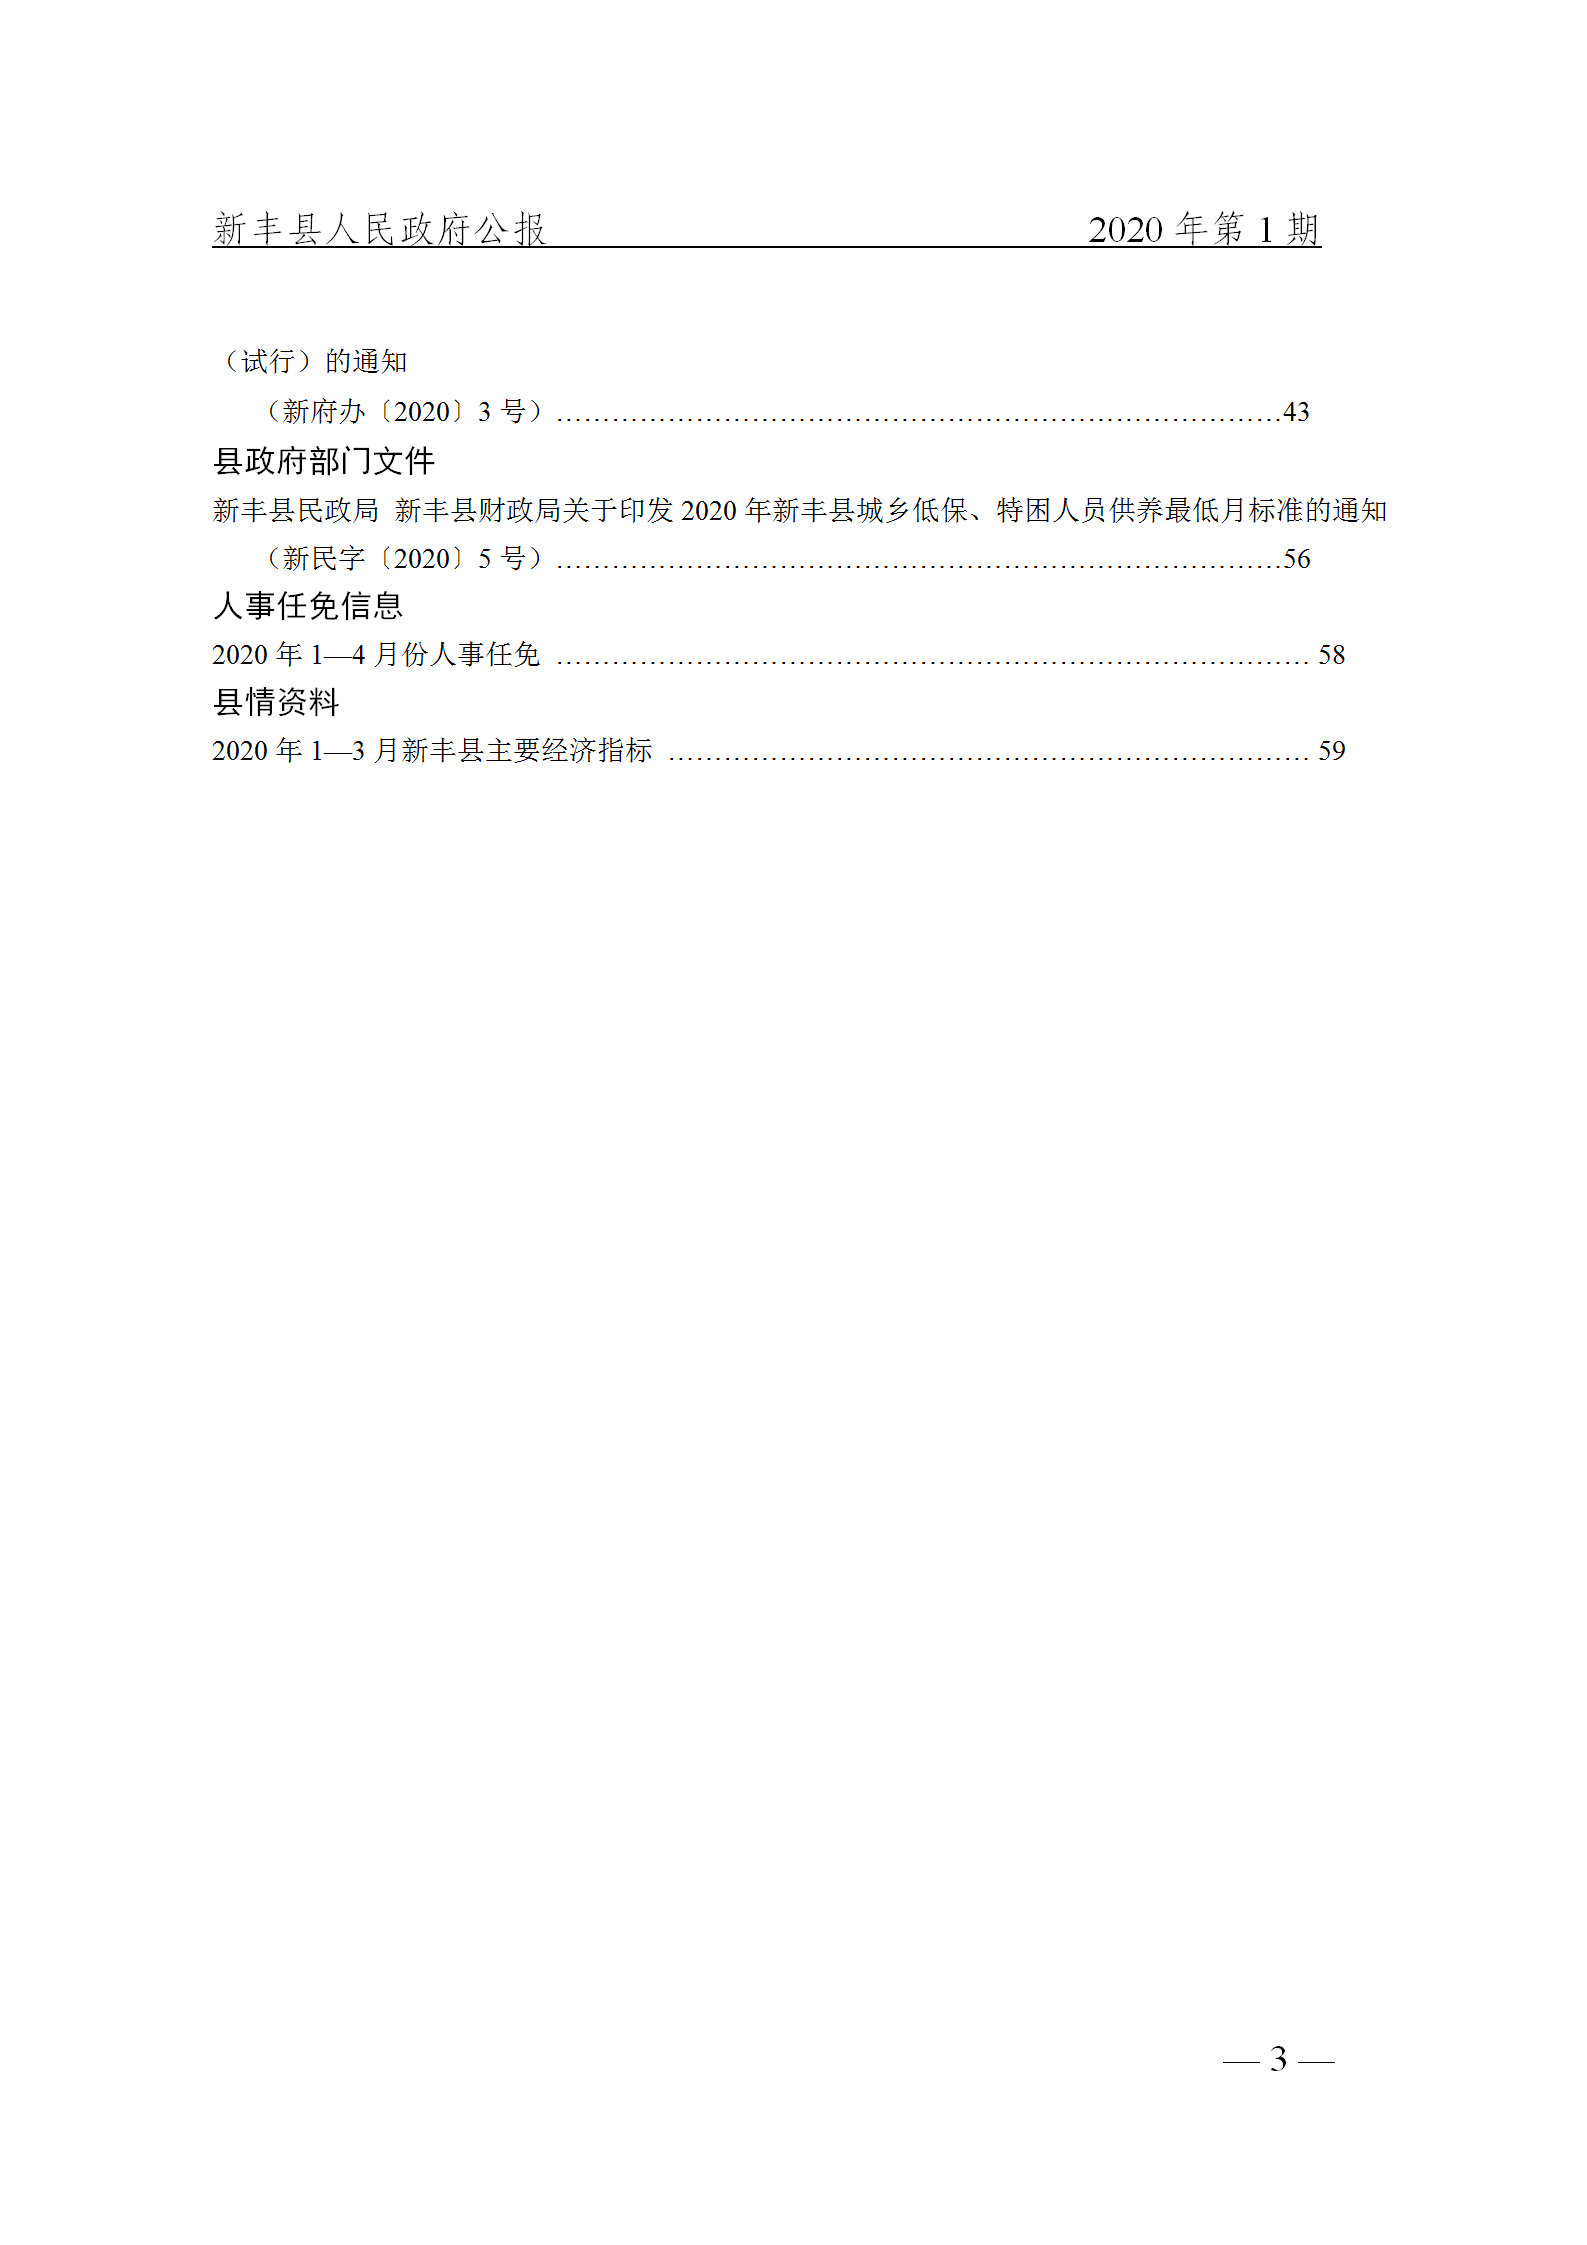 《新丰县人民政府公报》2020年第1期(1)_03.png